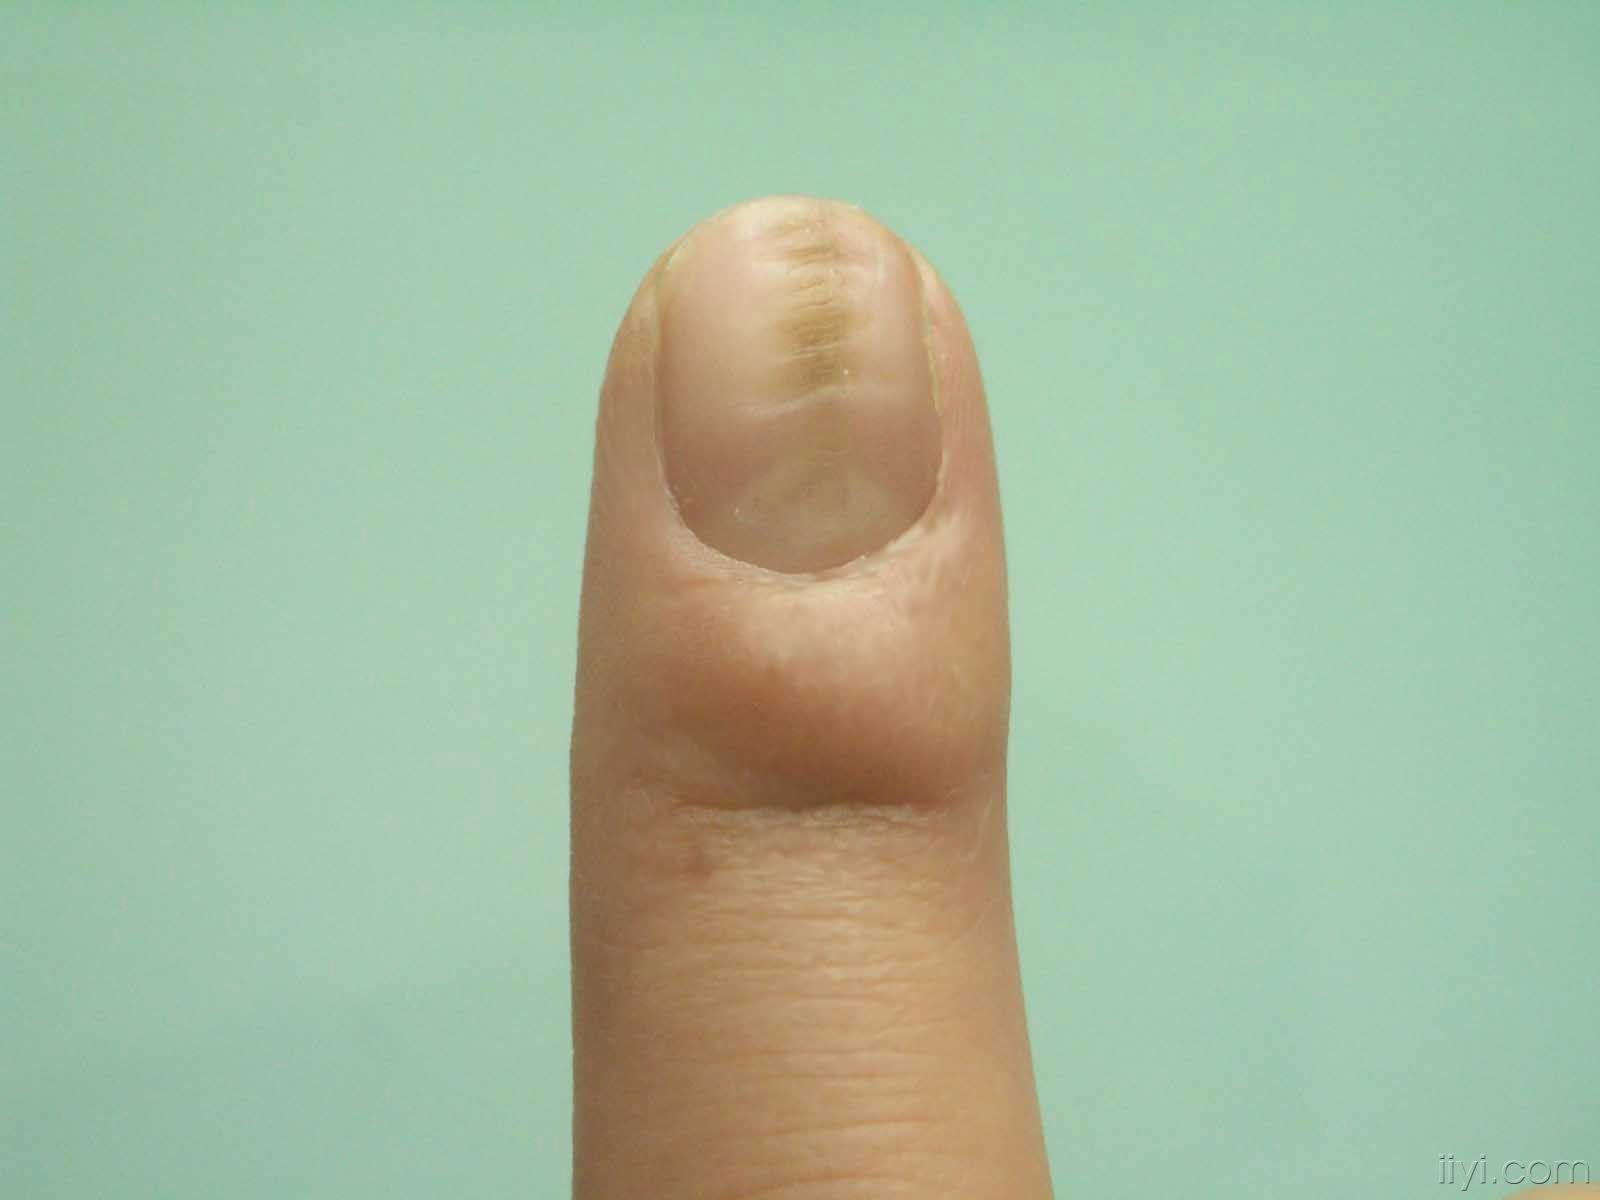 两只手的食指指甲都这样,是什么原因啊?